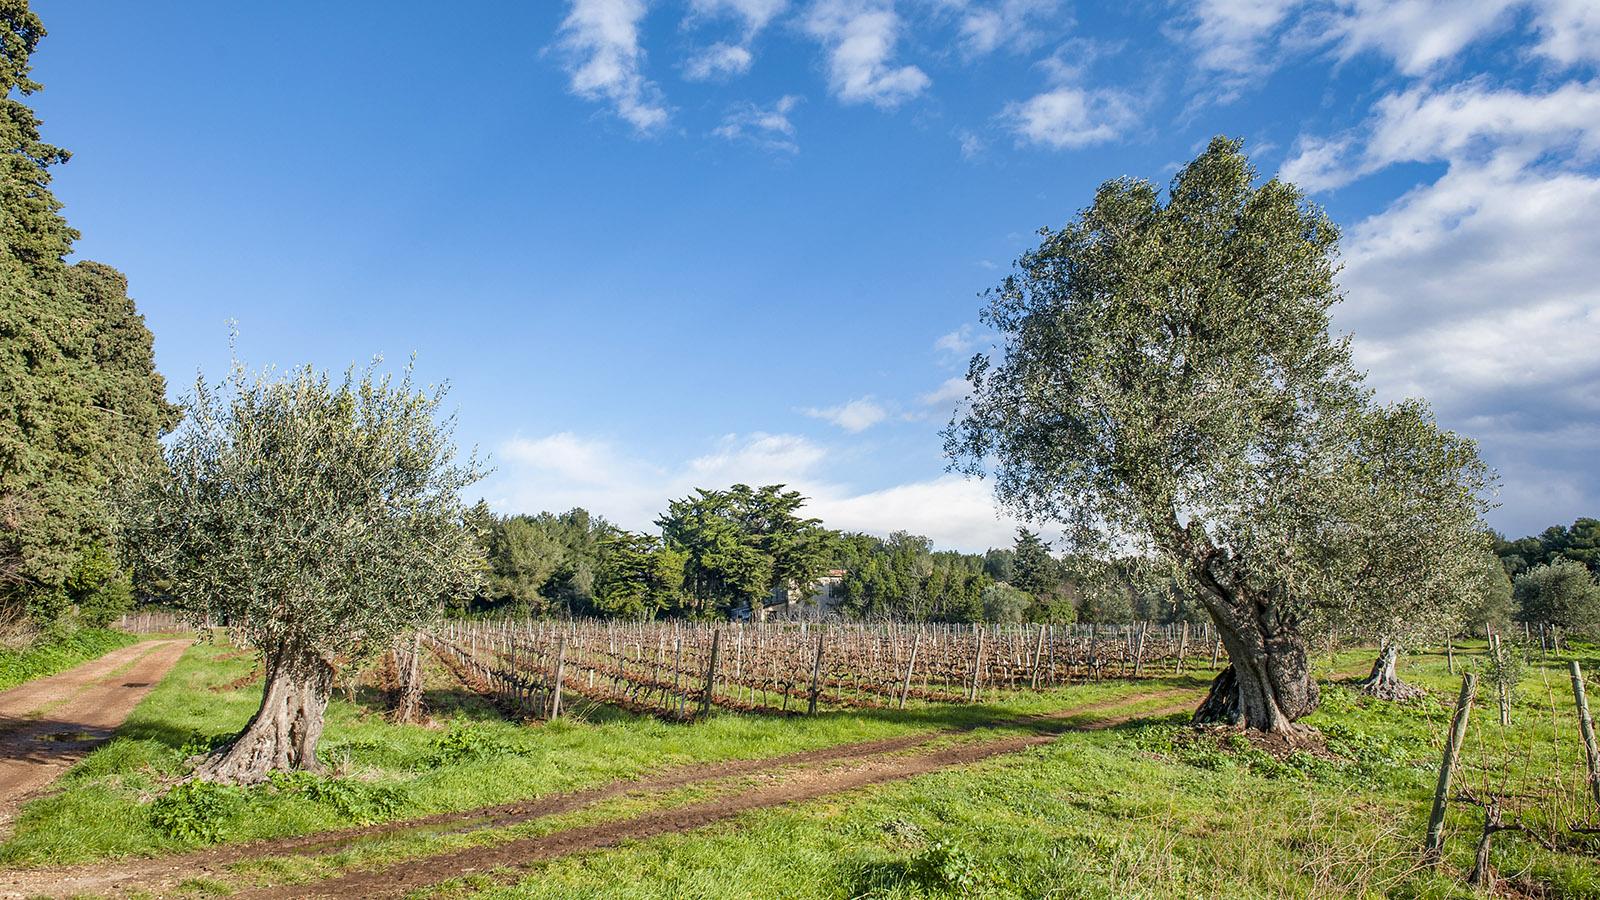 Oliven und Wein: die wirtschaftliche Grundlage der Zisterziensermönchen von Saint-Honorat seit dem 5. Jahrhundert. Foto: Hilke Maunder